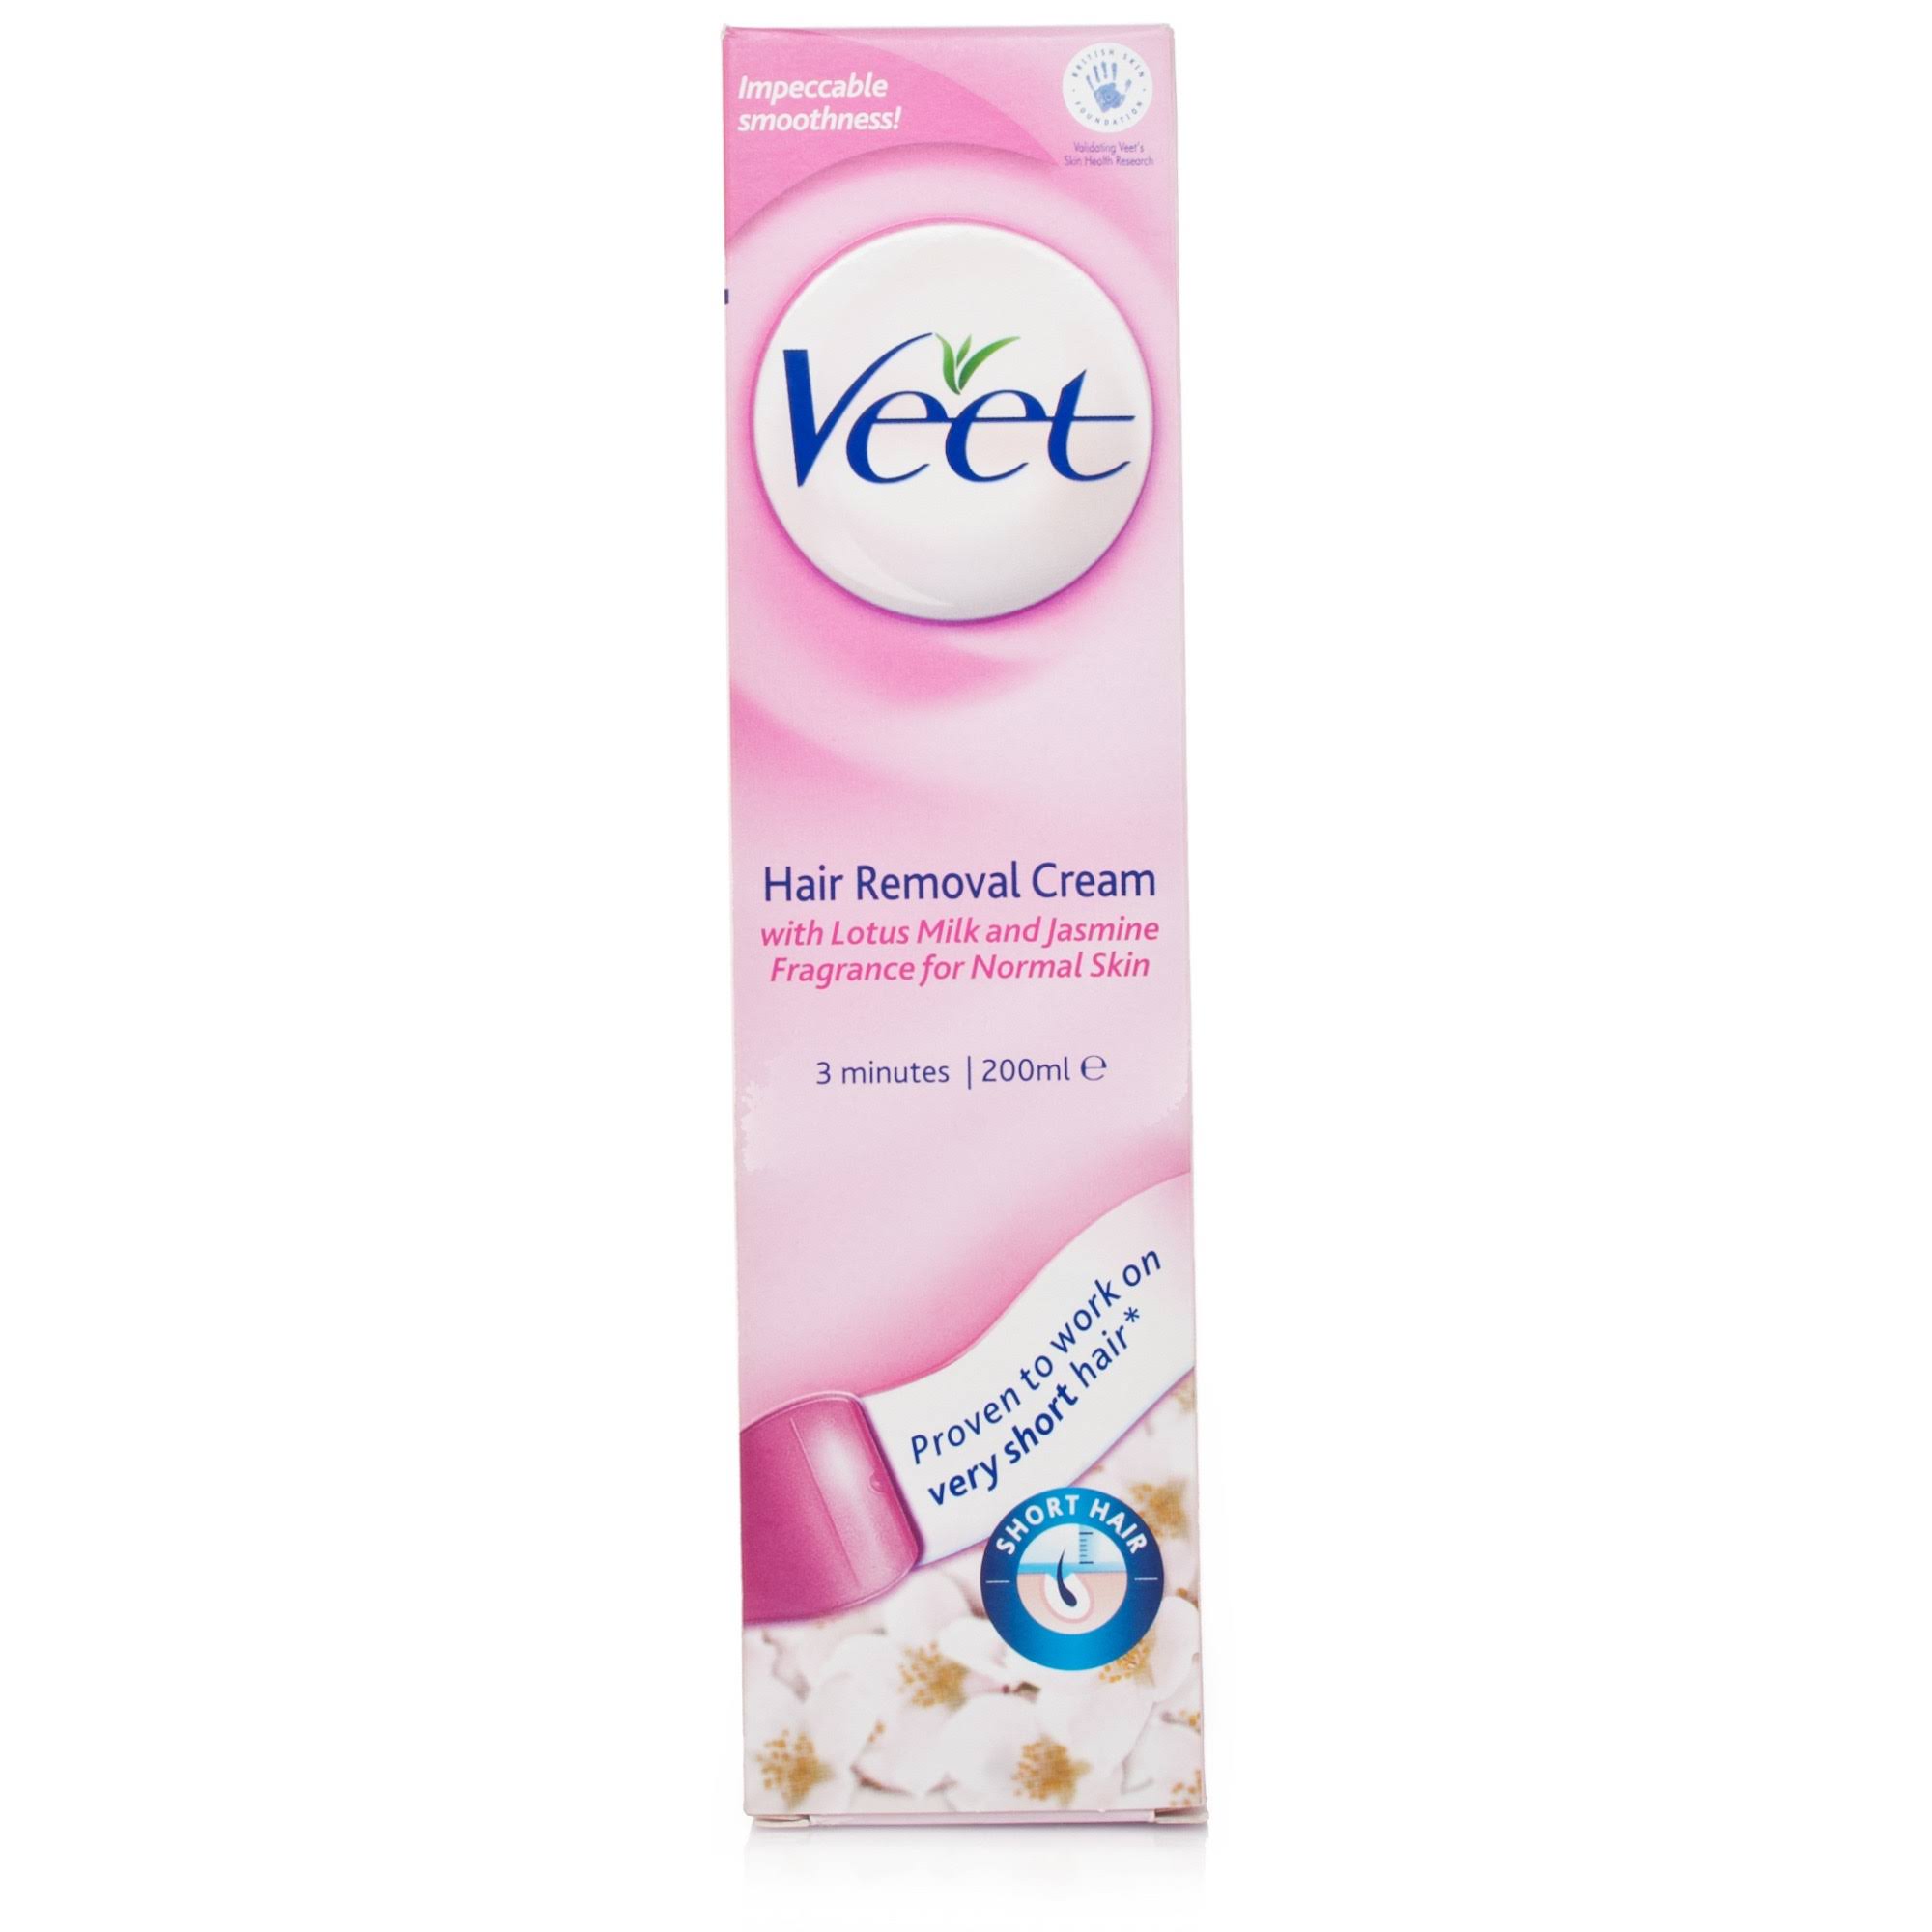 Veet Hair Removal Cream - for Normal Skin, 200ml